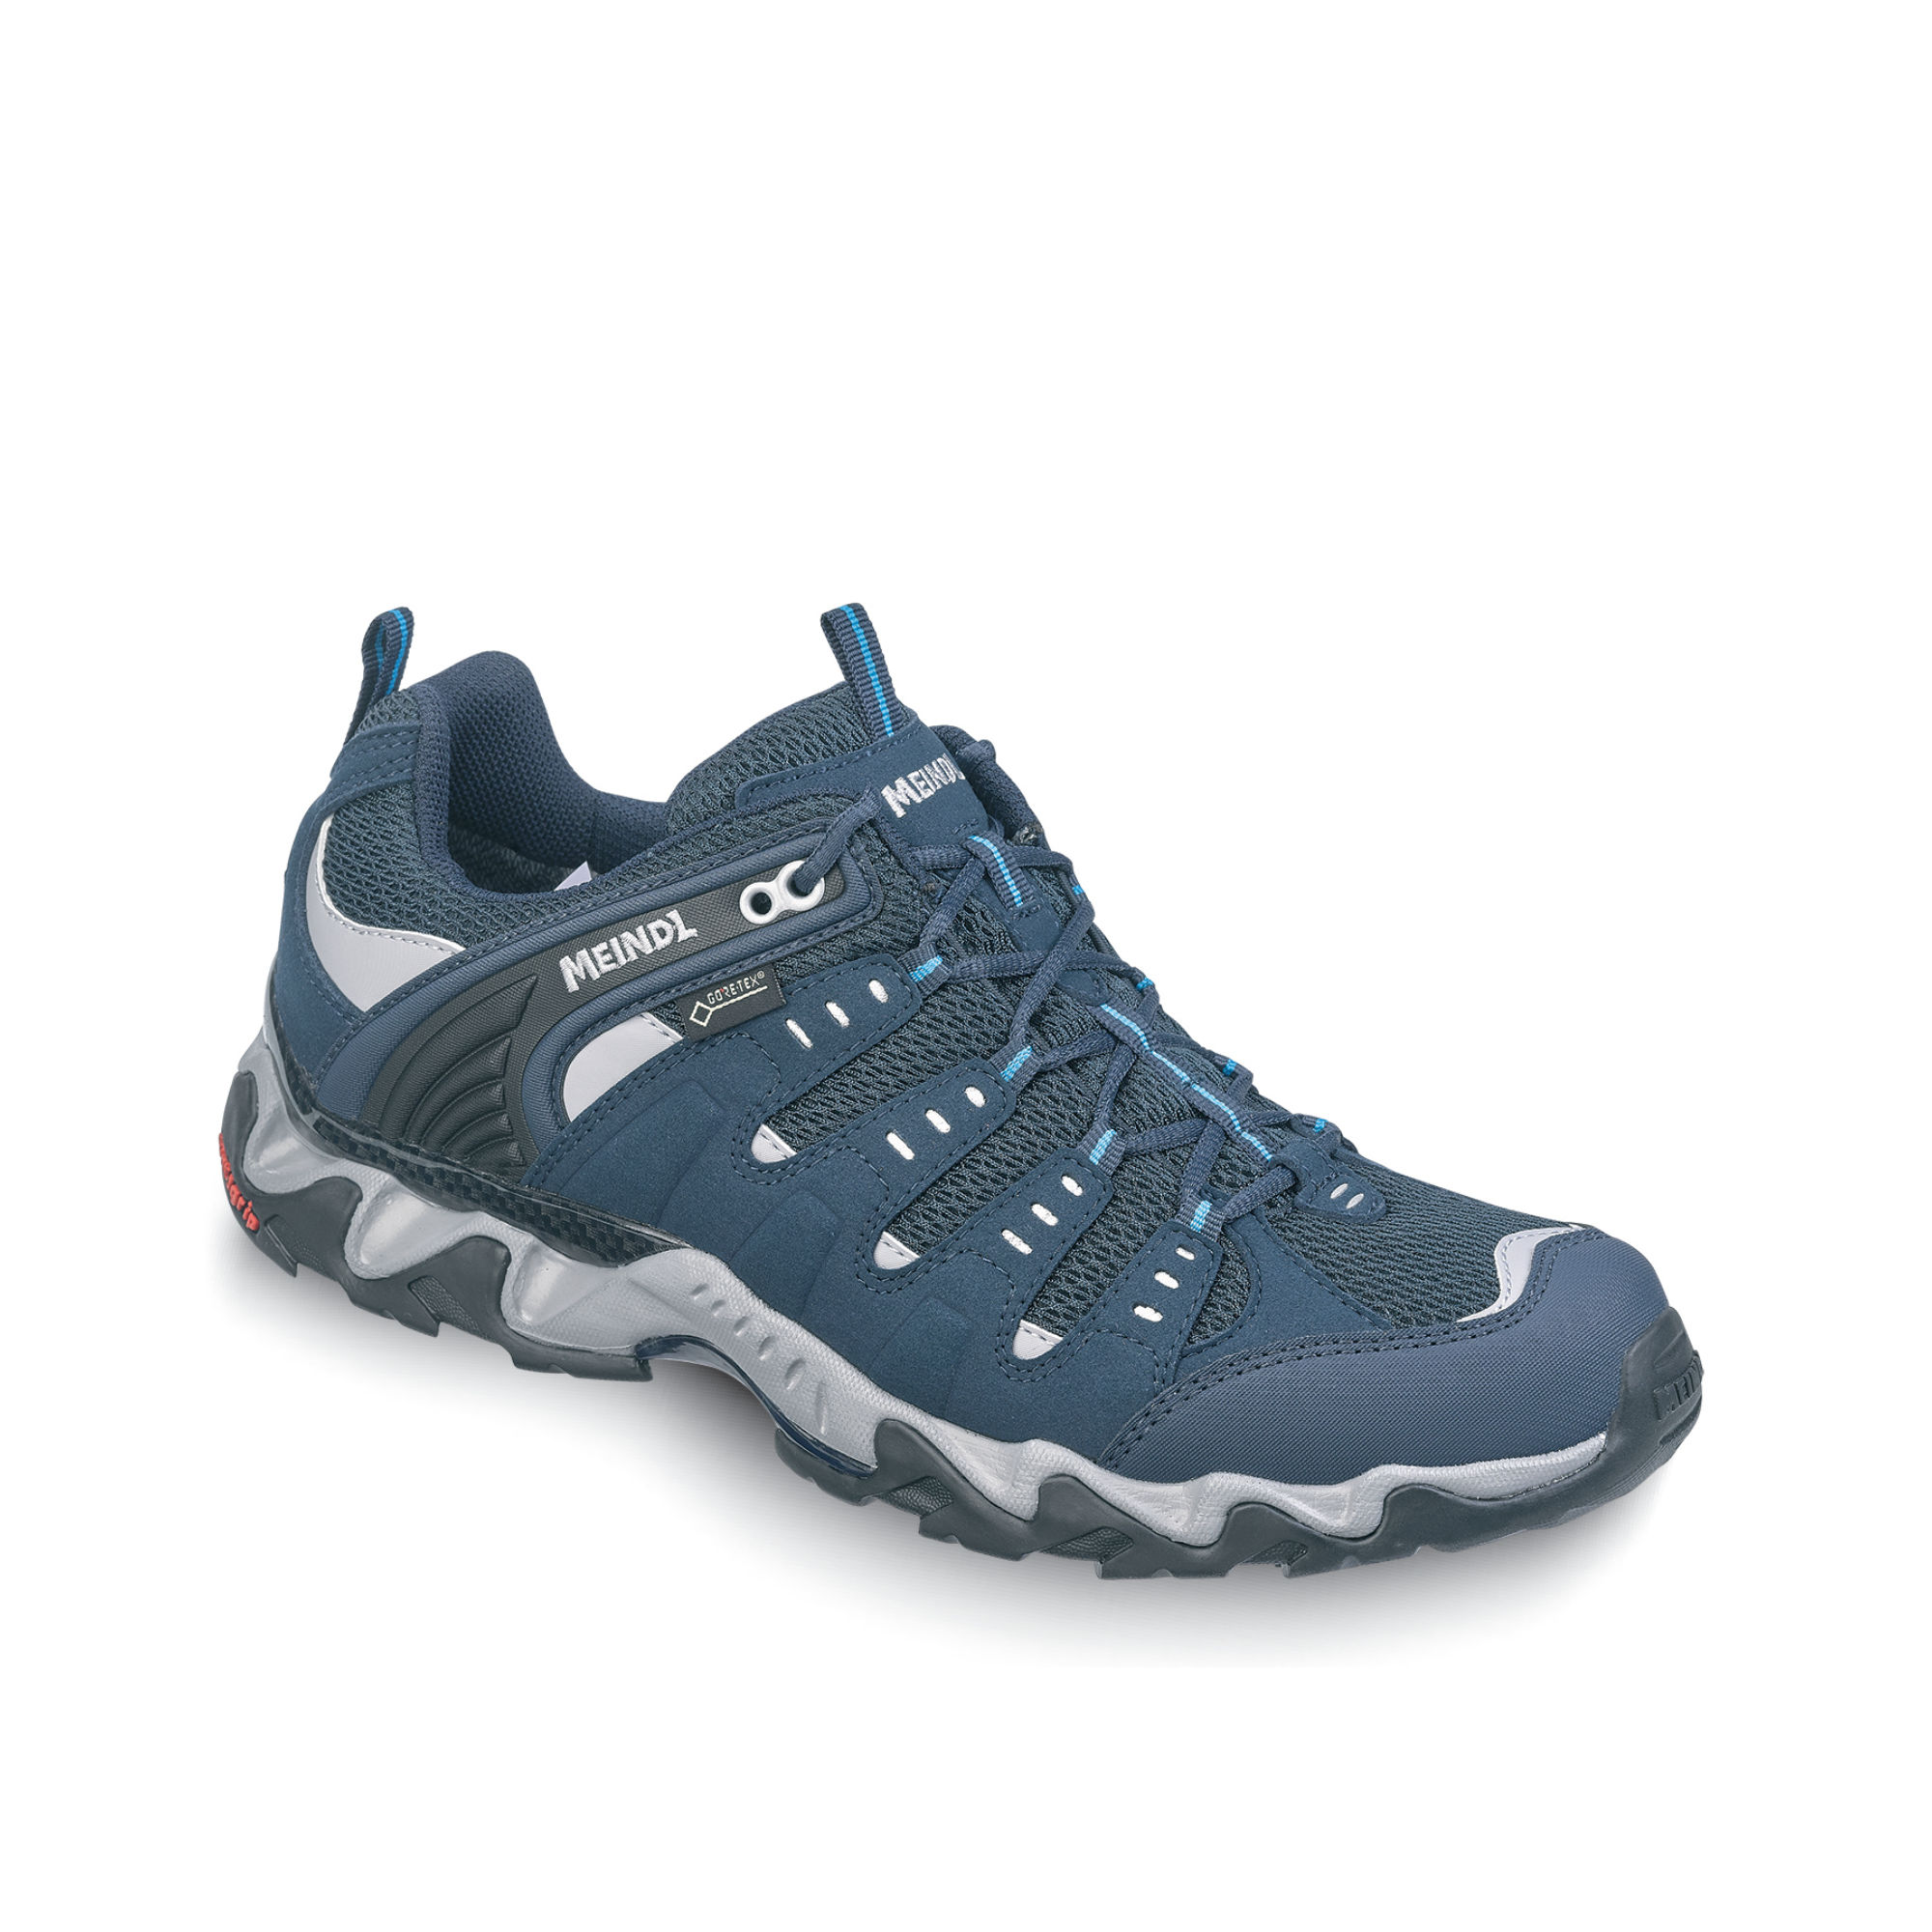 Chaussures de randonnée homme Meindl Respond XCR 680129 